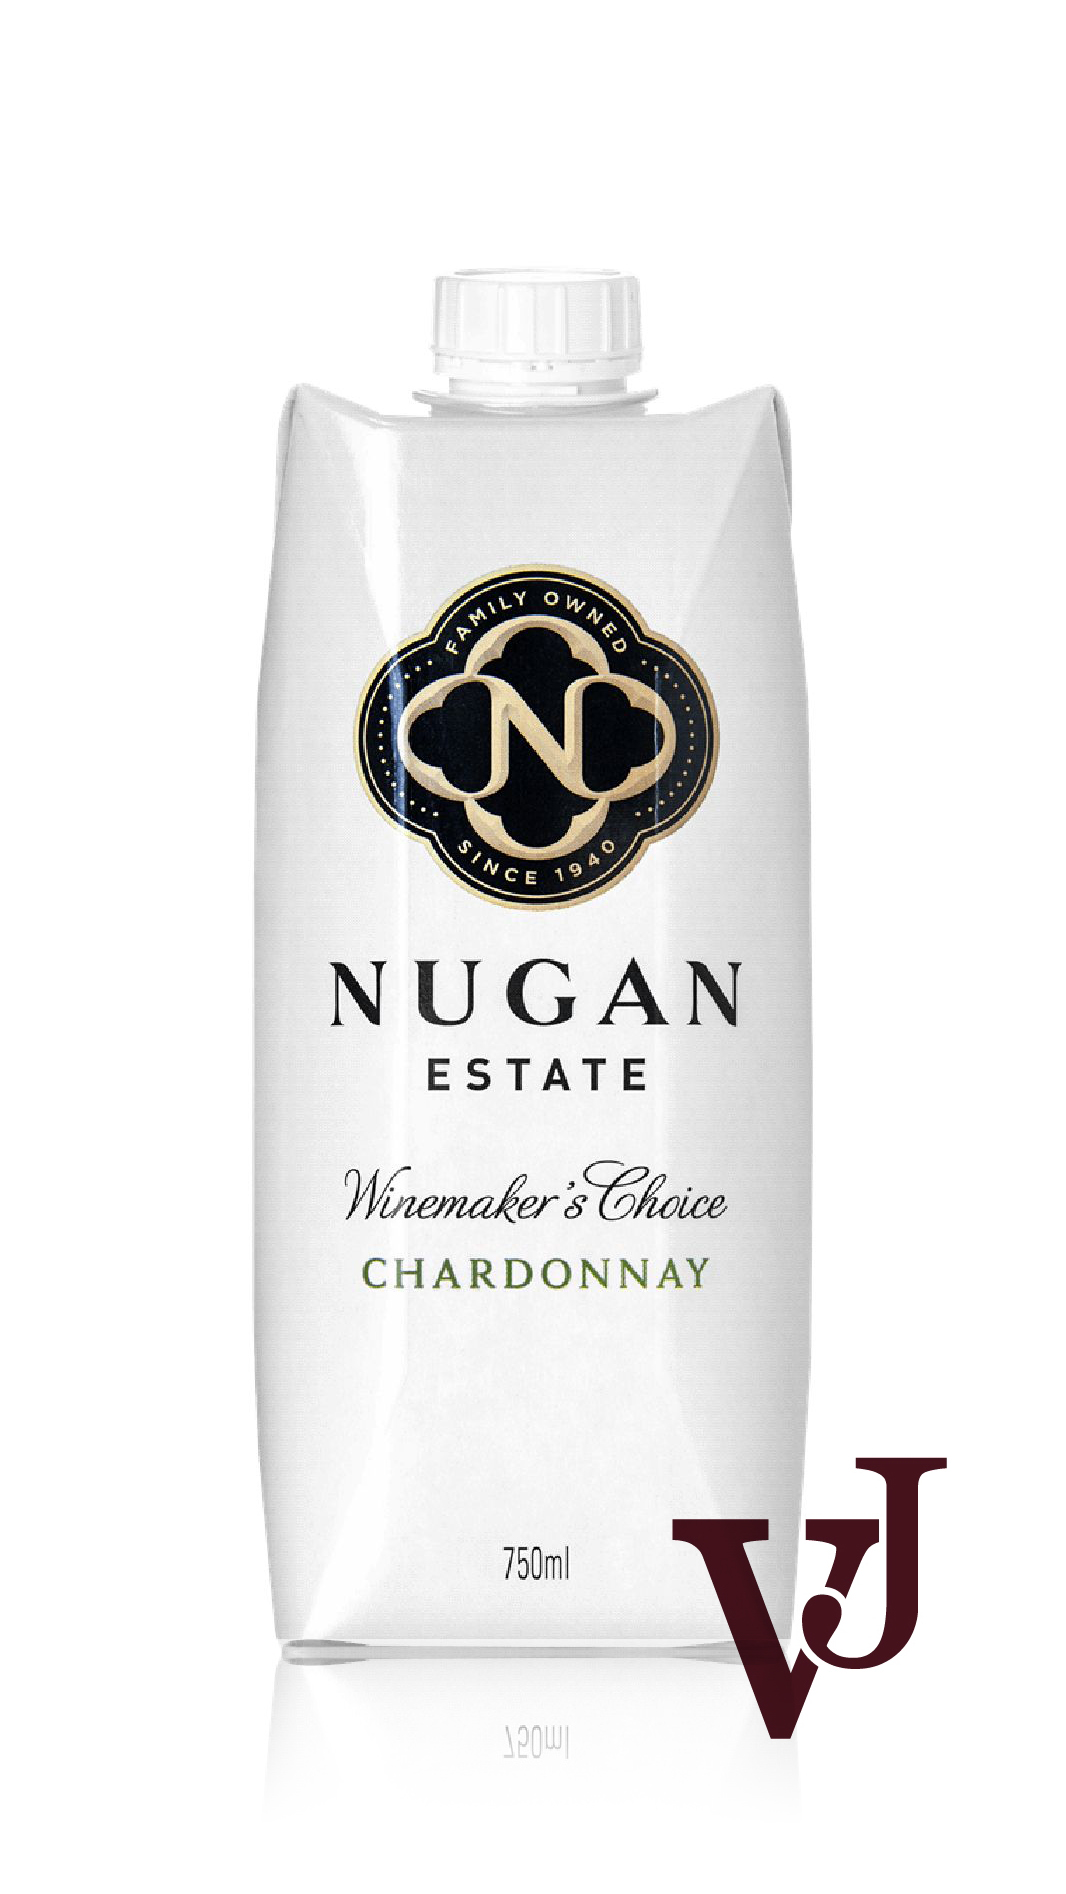 Vitt Vin - Nugan Estate Winemakers Choice artikel nummer 208511 från producenten Carl Wine från området Australien